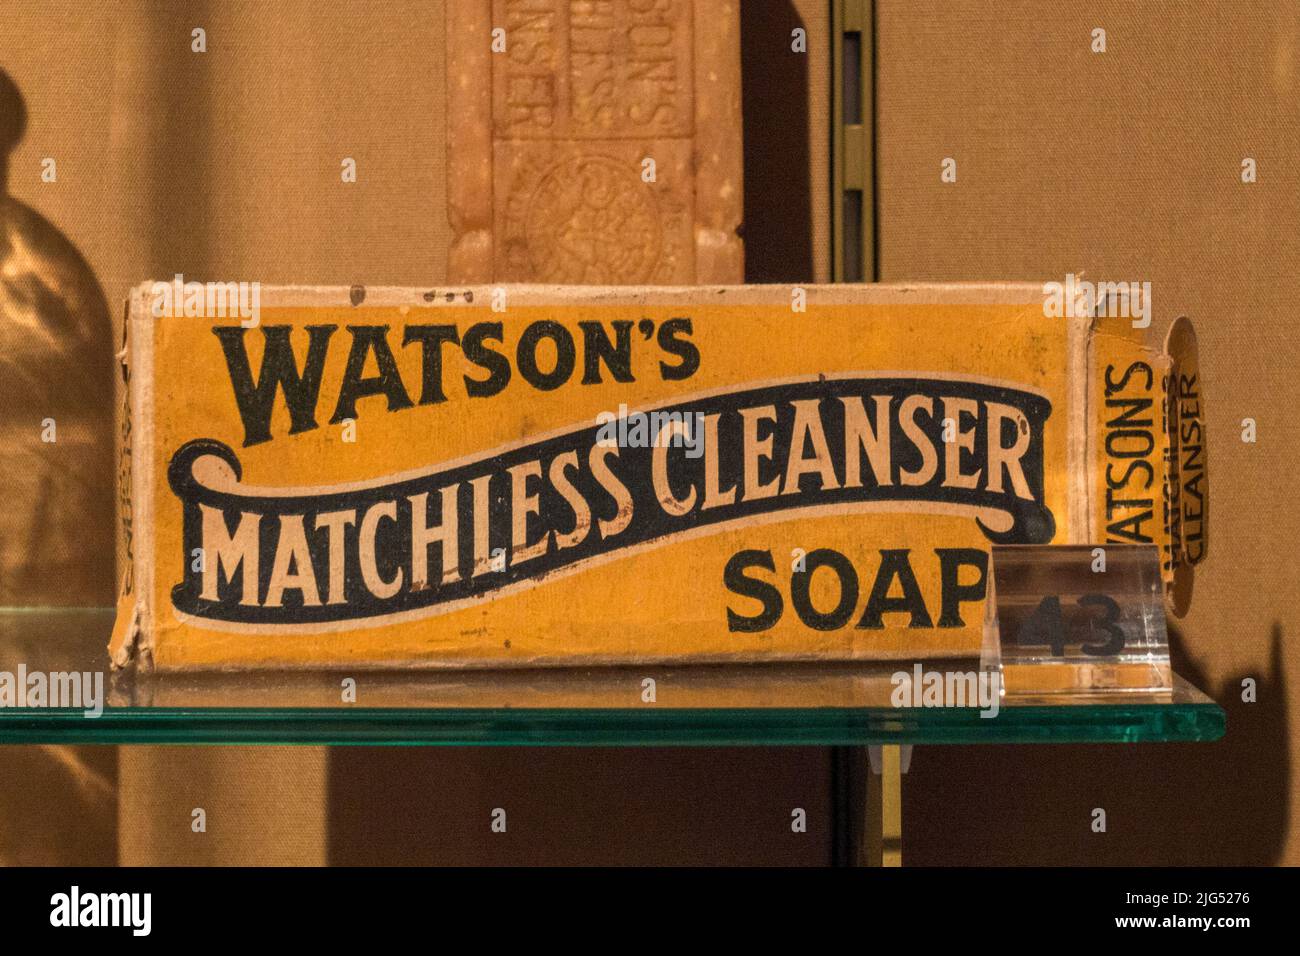 Confezione Watsons "Matchless Cleanser SOAP" in esposizione nel Regno Unito. Foto Stock